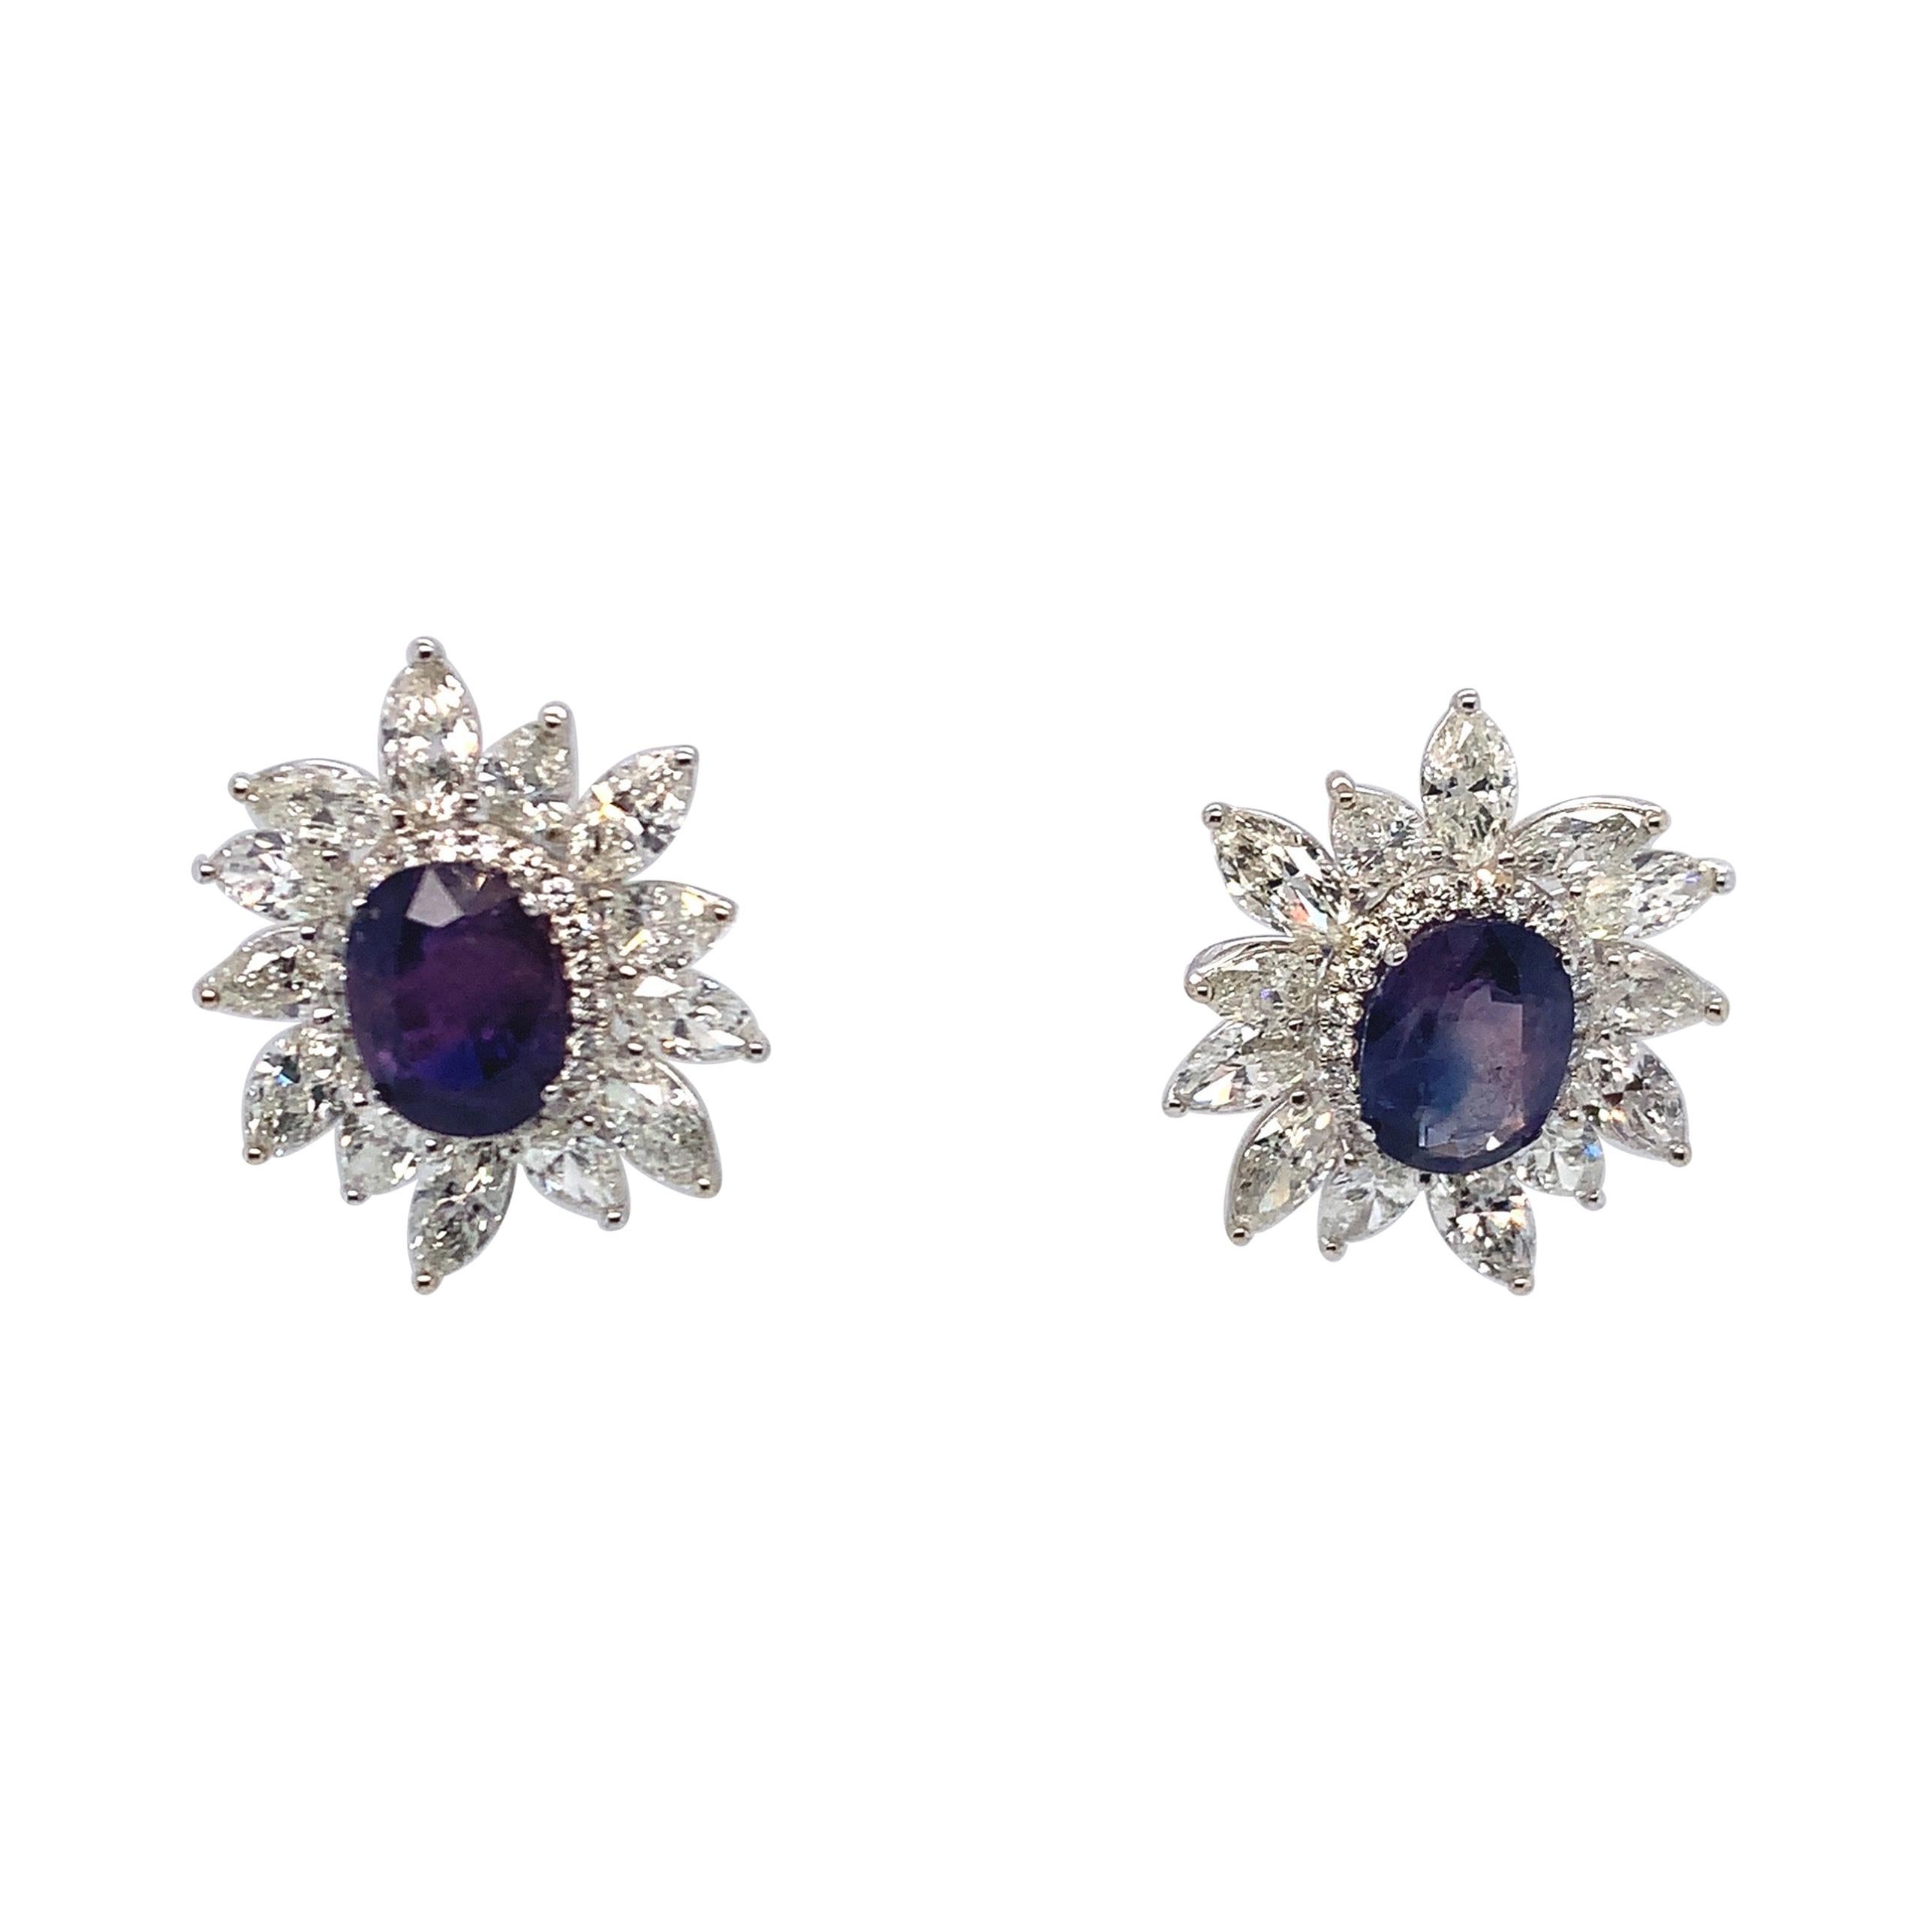 GIA Certified 7.05 Carat Blue Kashmir Sapphire Diamond Earrings in 18K Gold